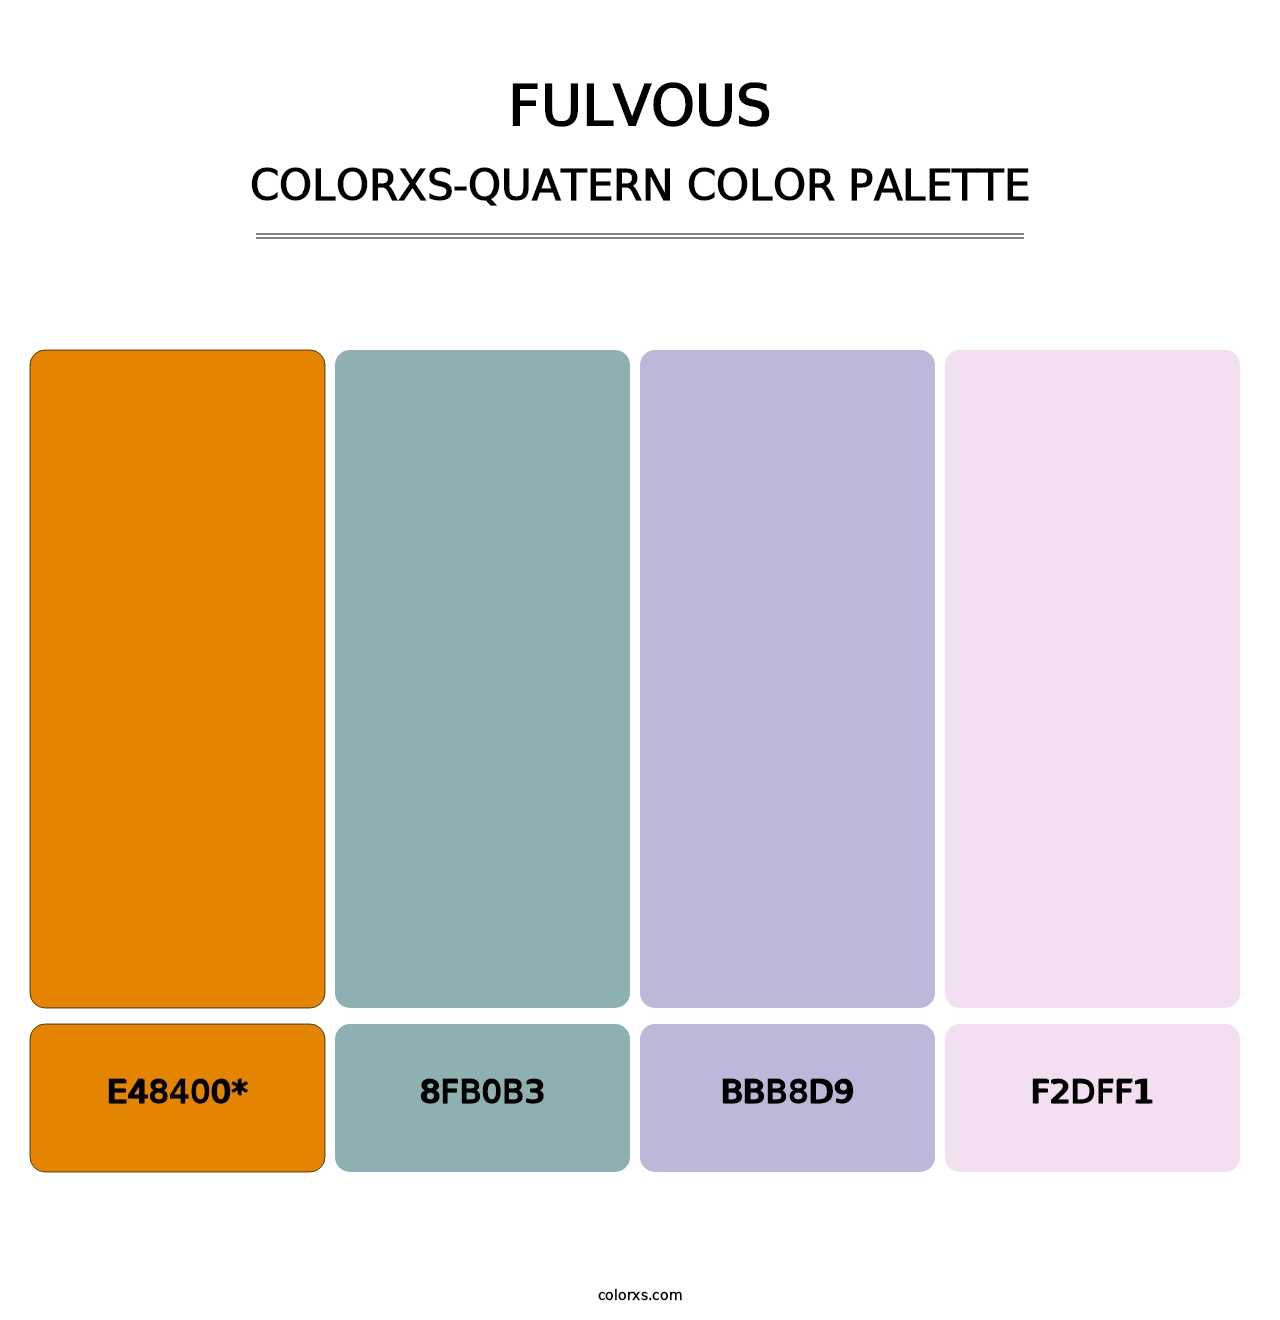 Fulvous - Colorxs Quatern Palette